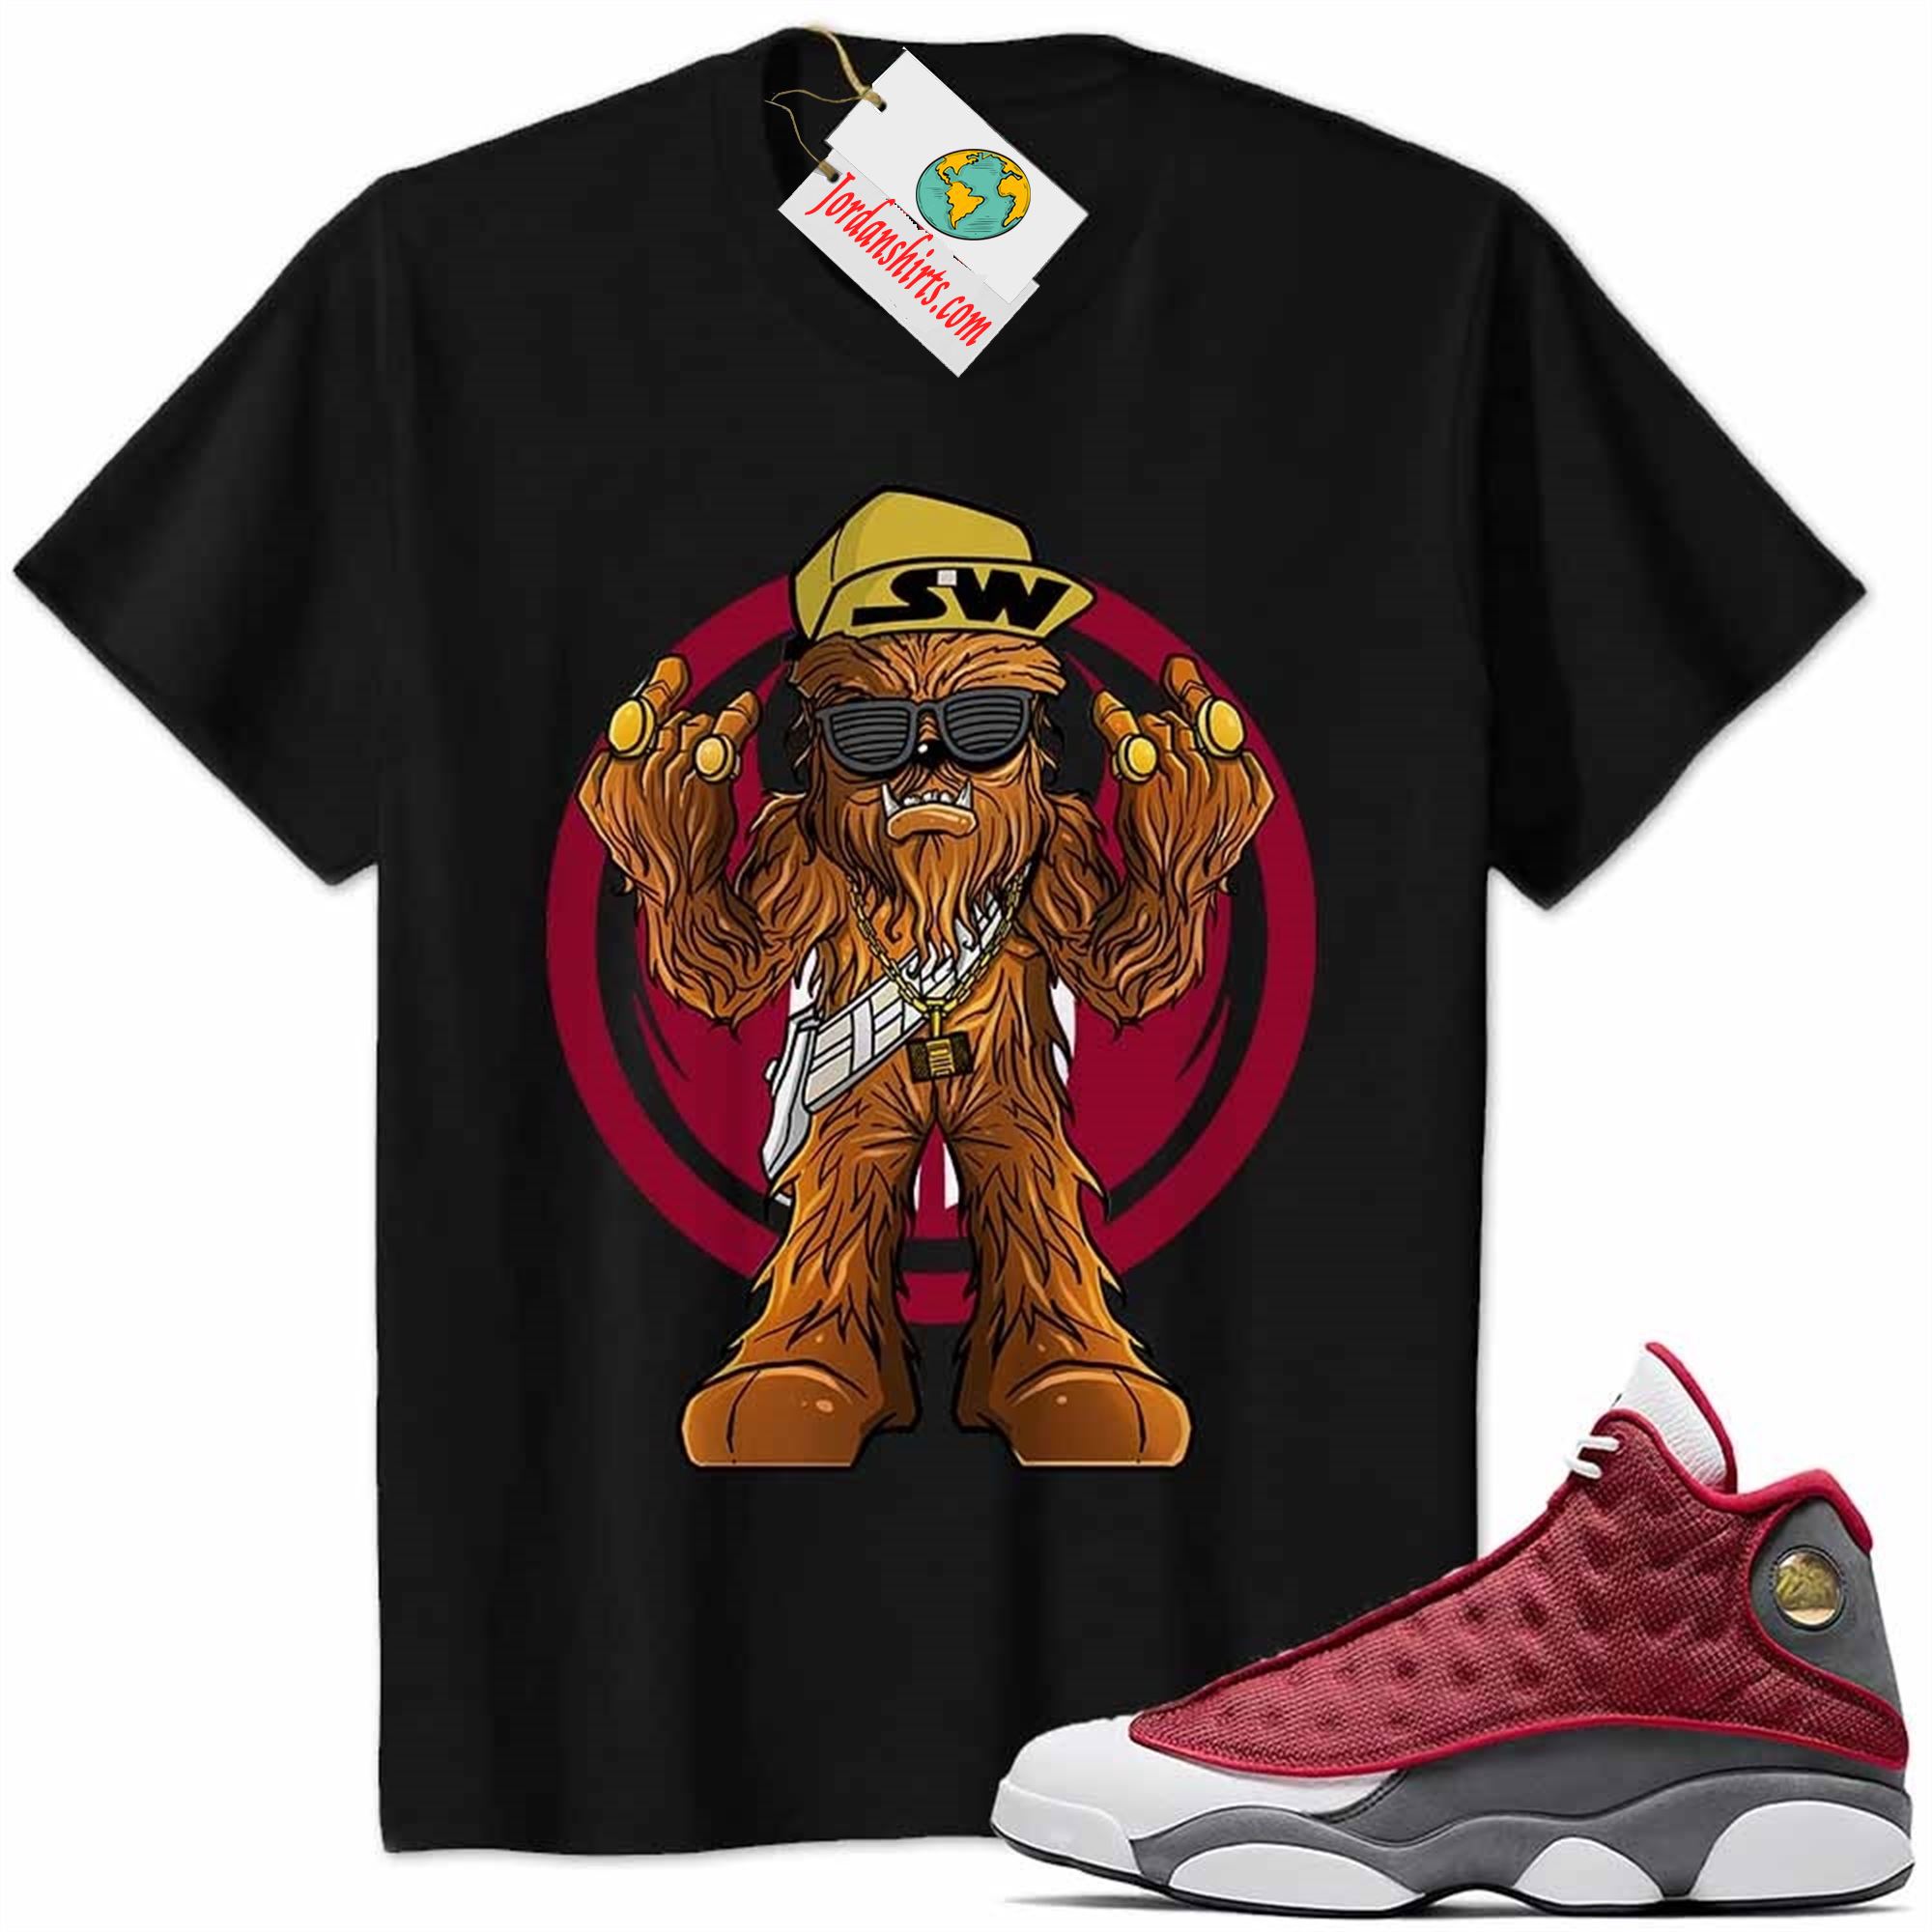 Jordan 13 Shirt, Gangster Chewbacca Stars War Black Air Jordan 13 Red Flint 13s Size Up To 5xl